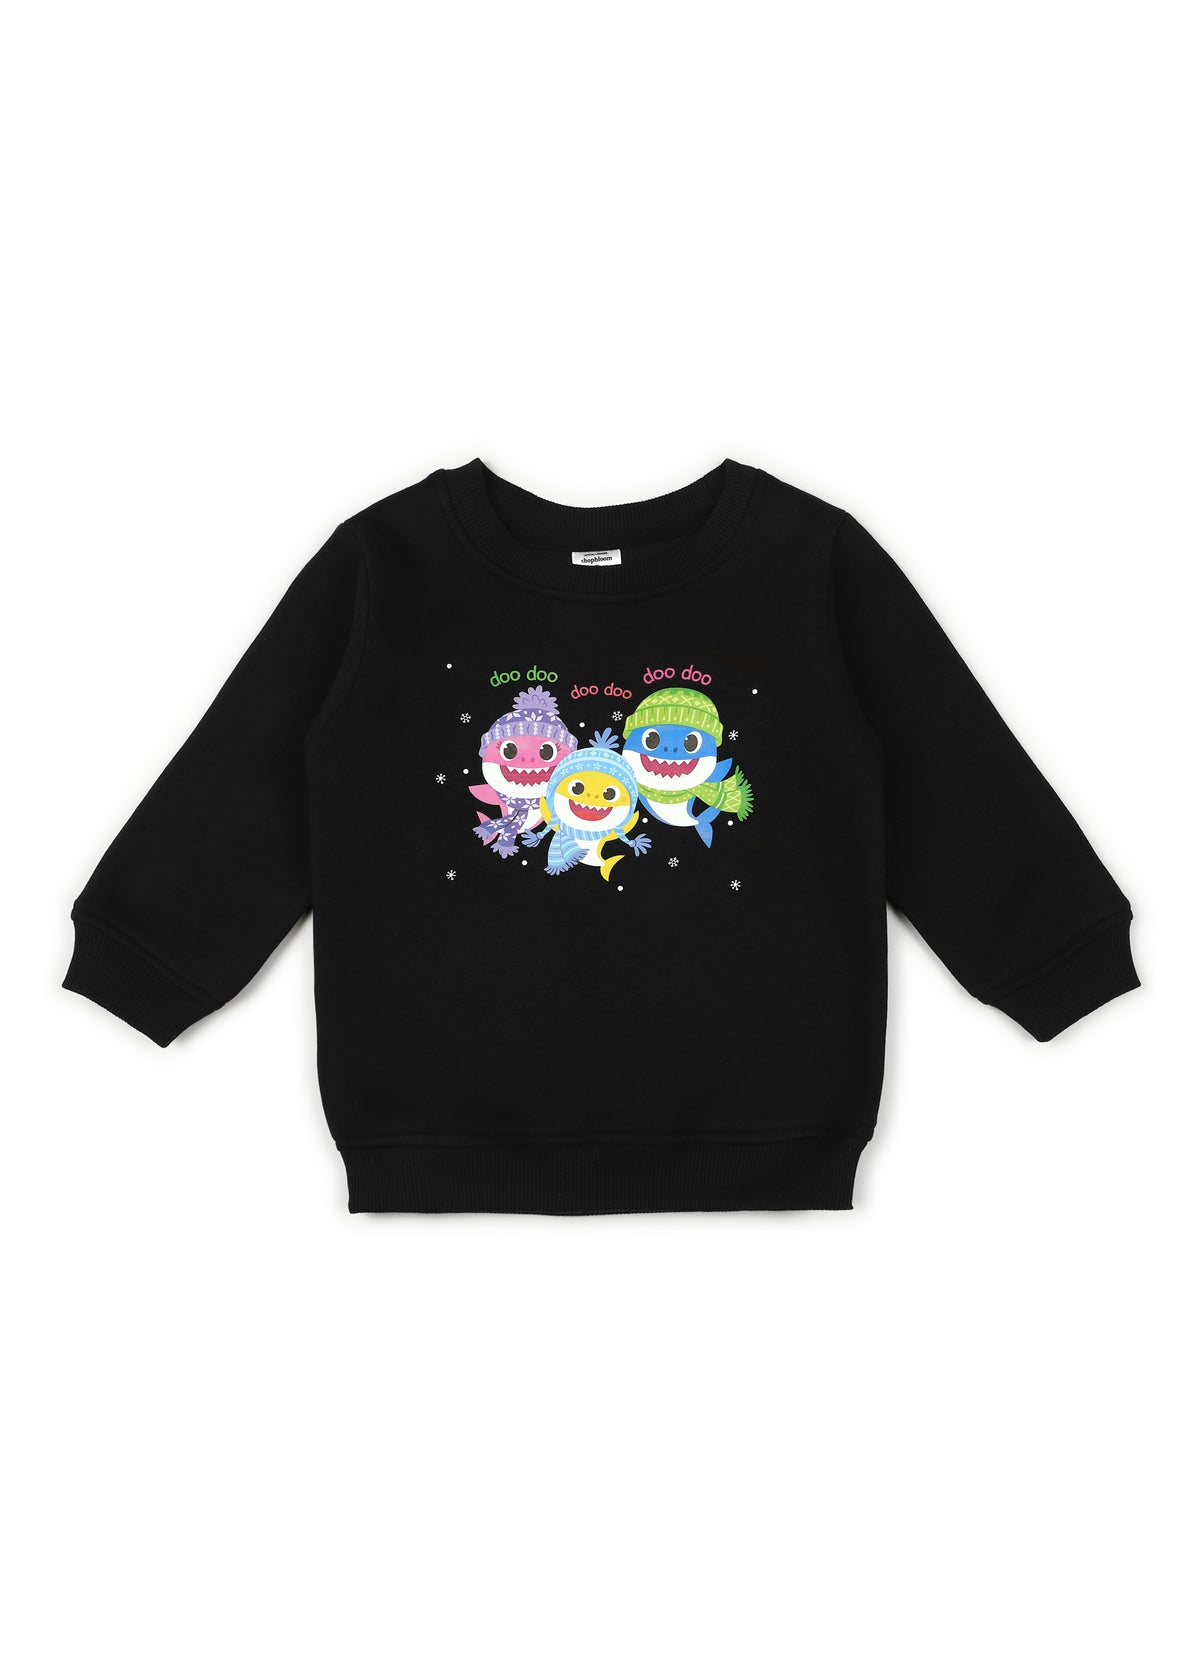 Baby Shark Doo-Doo Black Print Cotton Fleece Kids Sweatshirt Set - Shopbloom